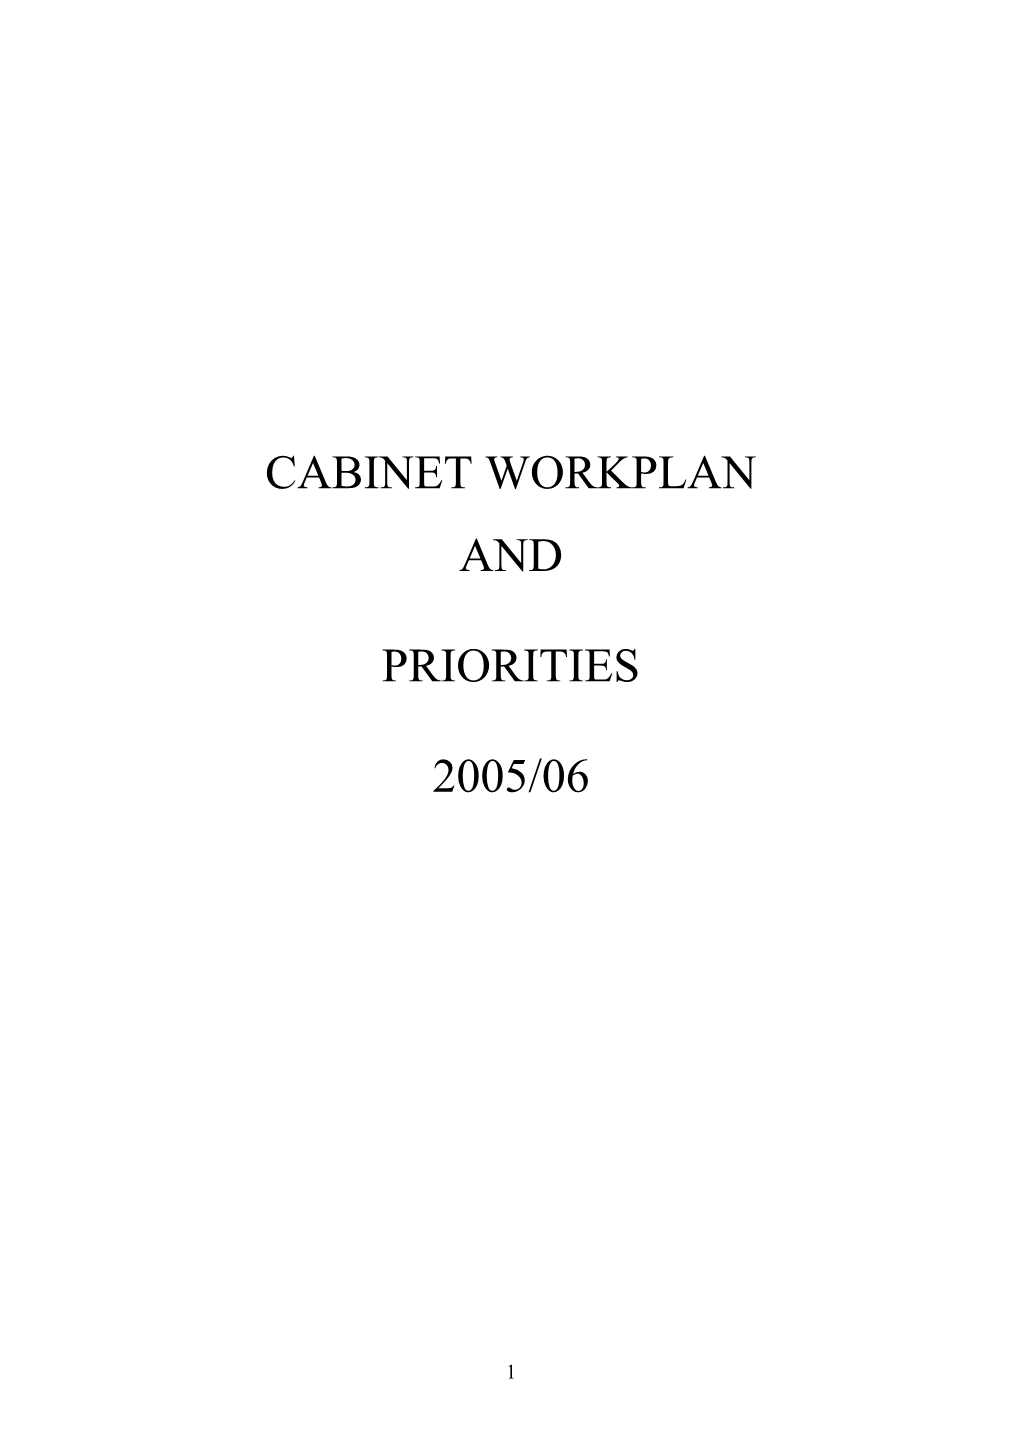 Cabinet Workplan